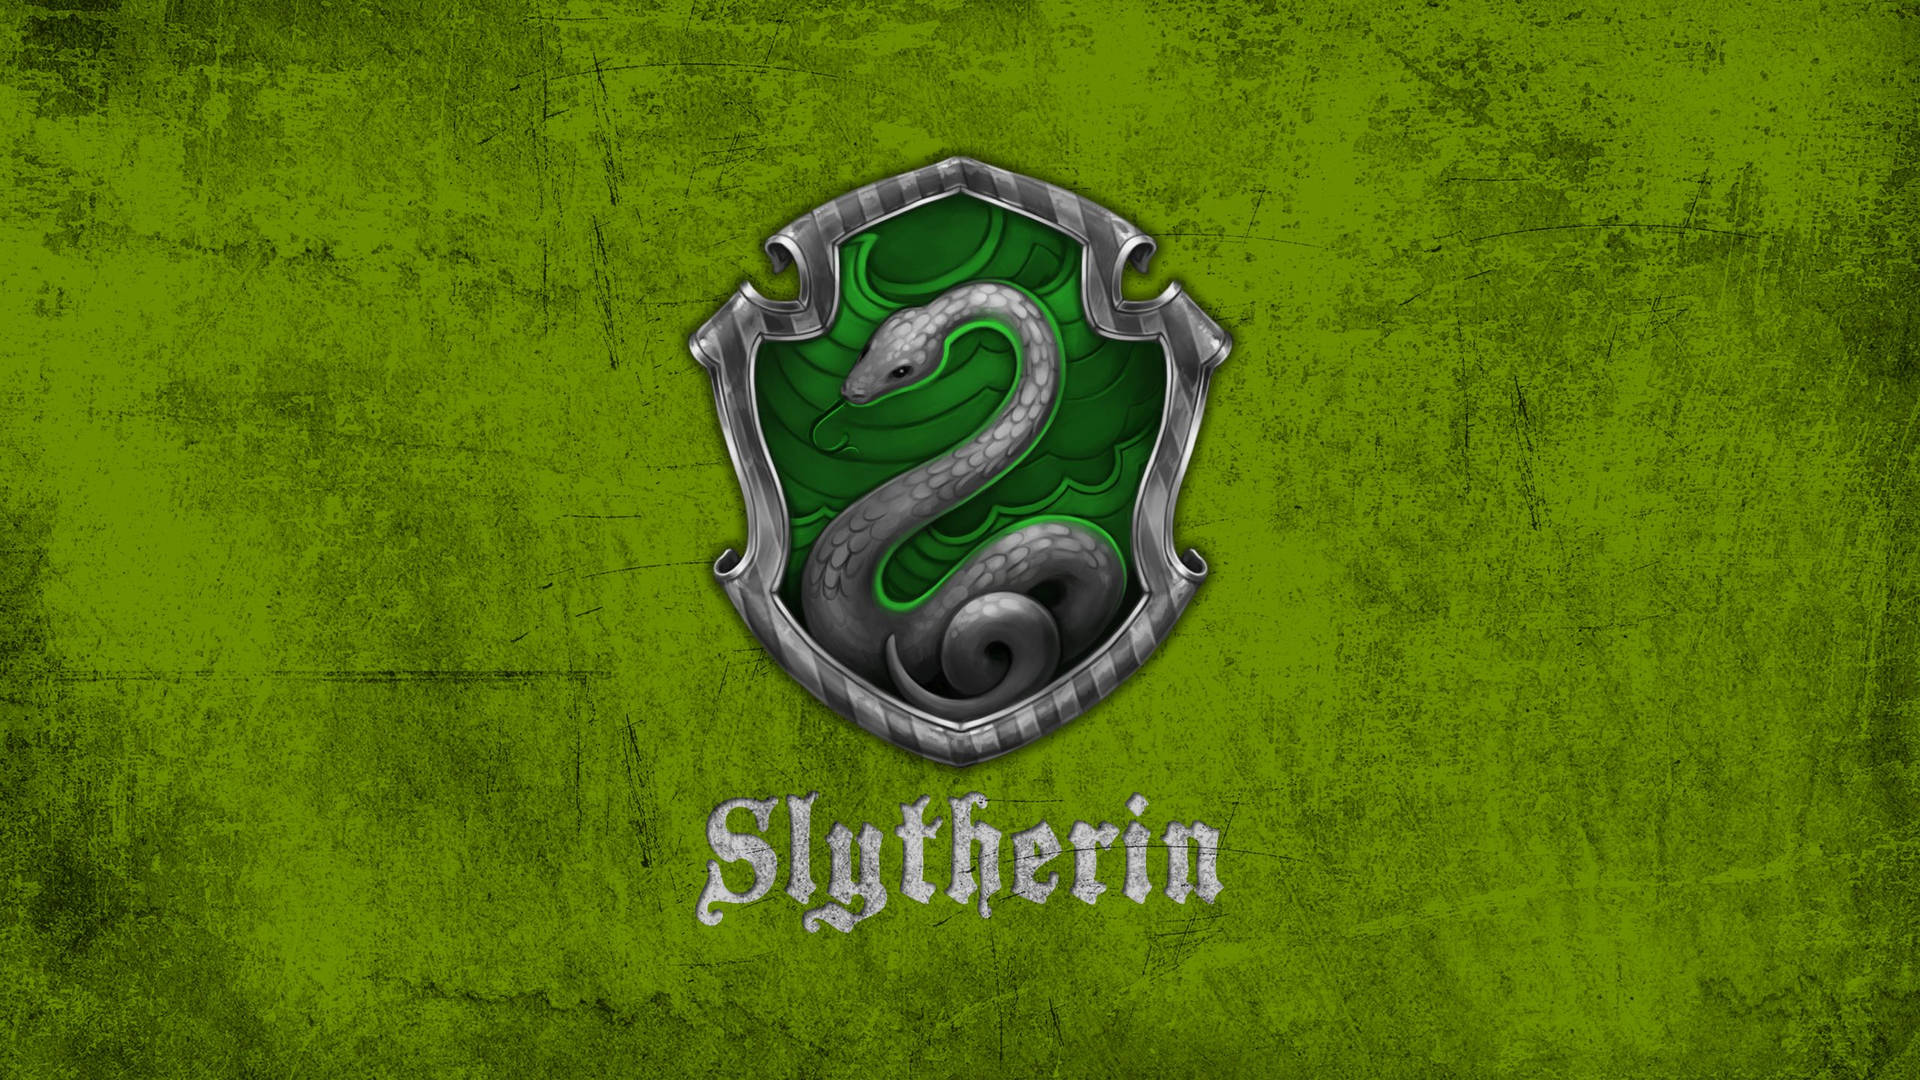 Harry Potter Houses Slytherin Snake